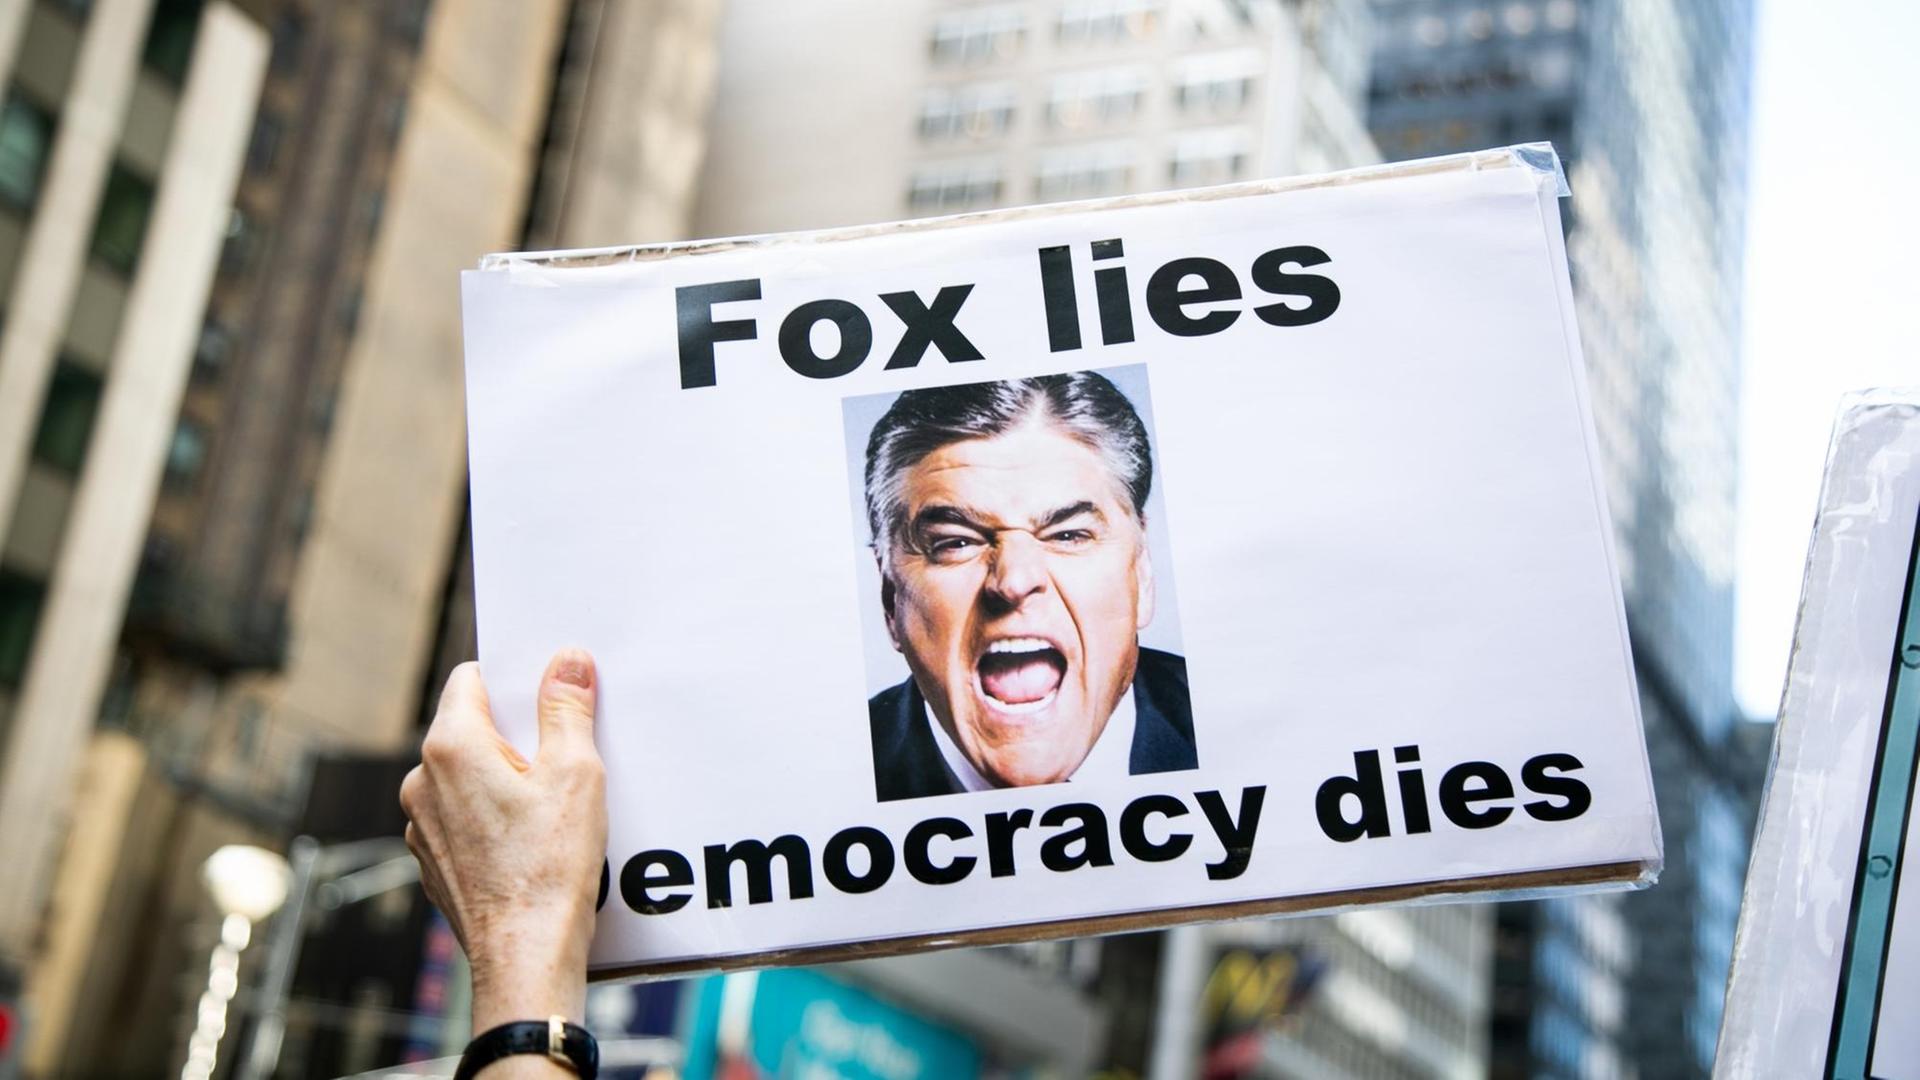 Eine Demonstrantin hält ein Schild mit der Aufrschrift "Fox lies, democracy dies".